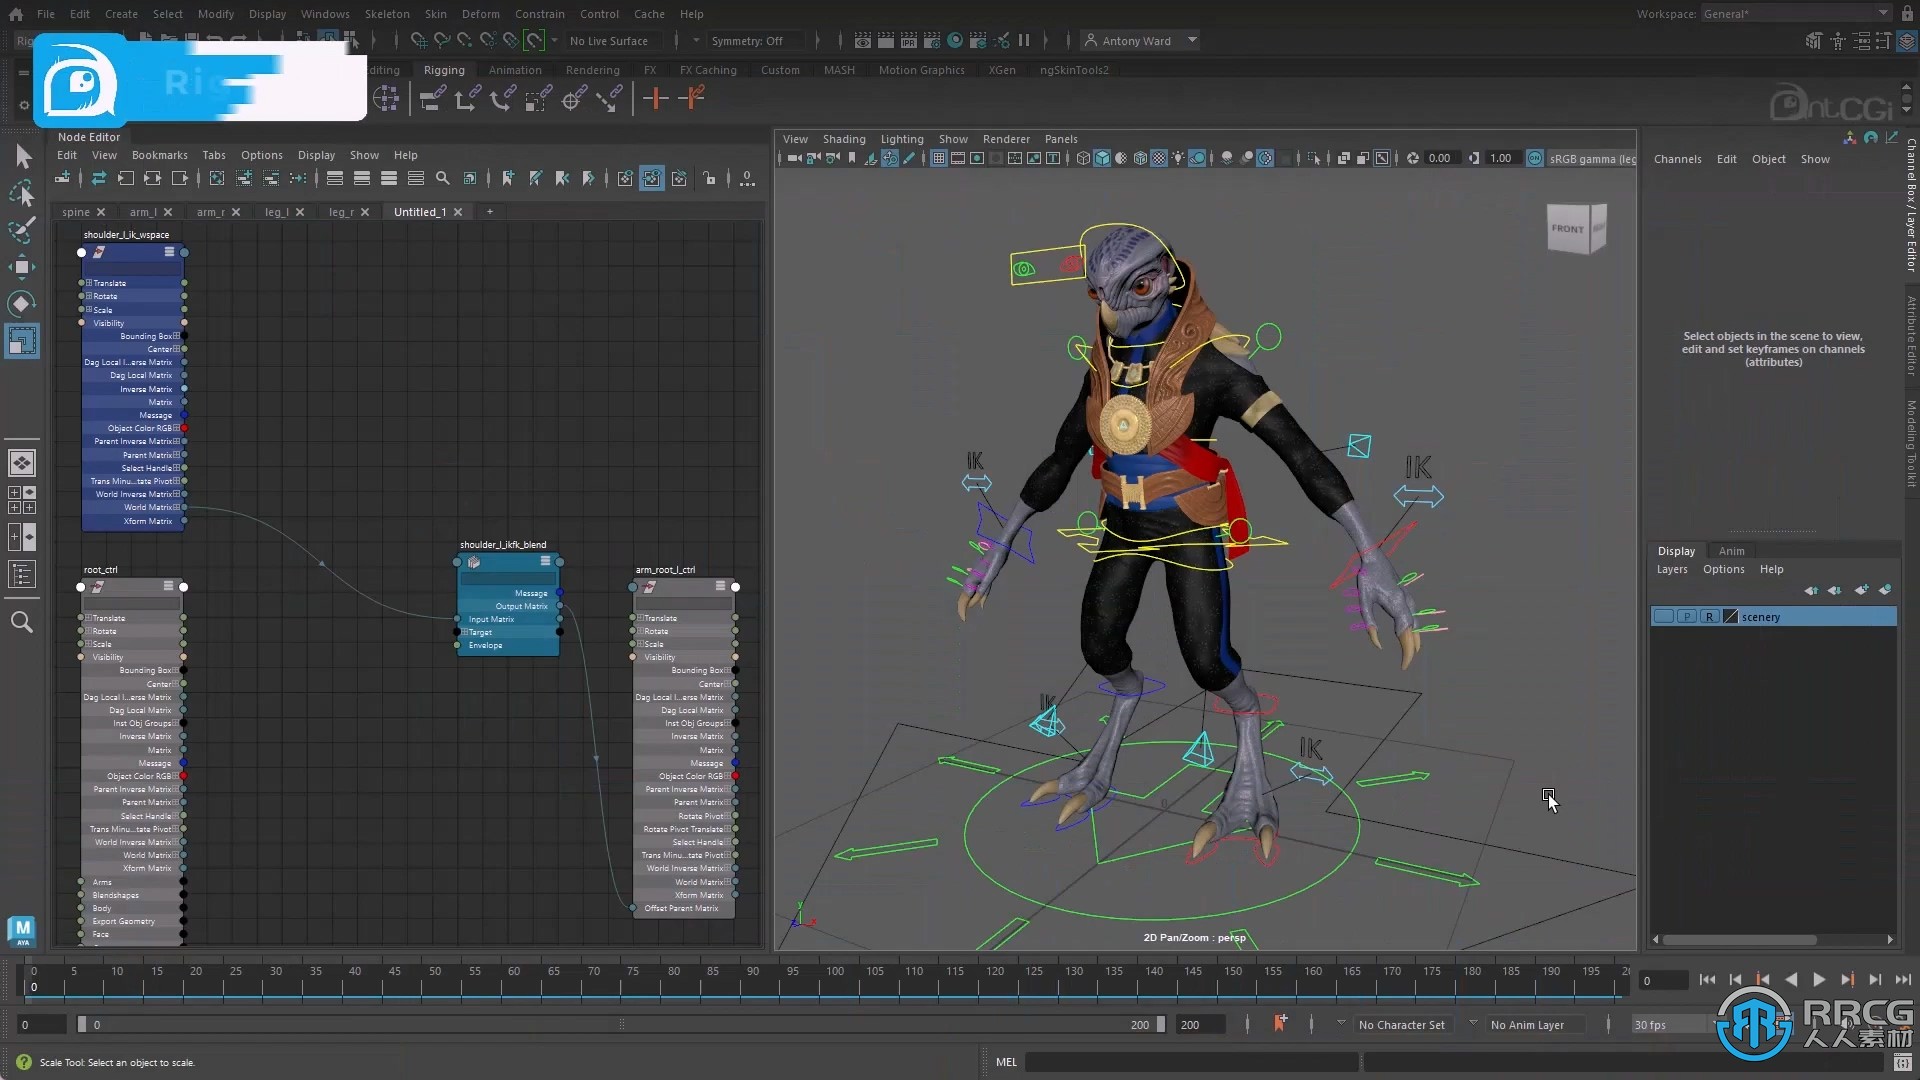 Maya三维建模与动画软件V2024版